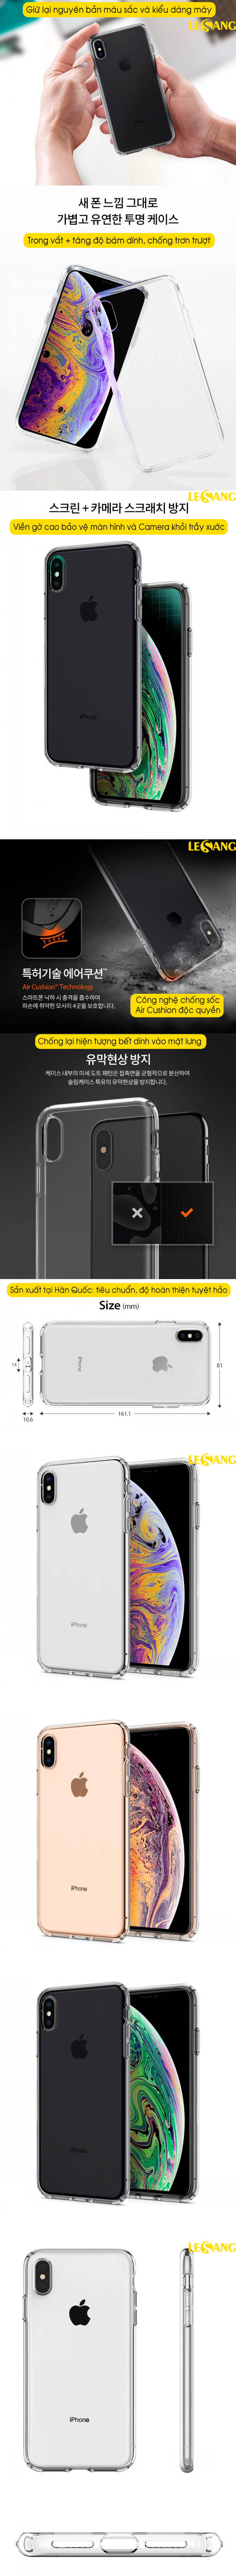 Ốp lưng iPhone XS Max Spigen Liquid Crystal 4